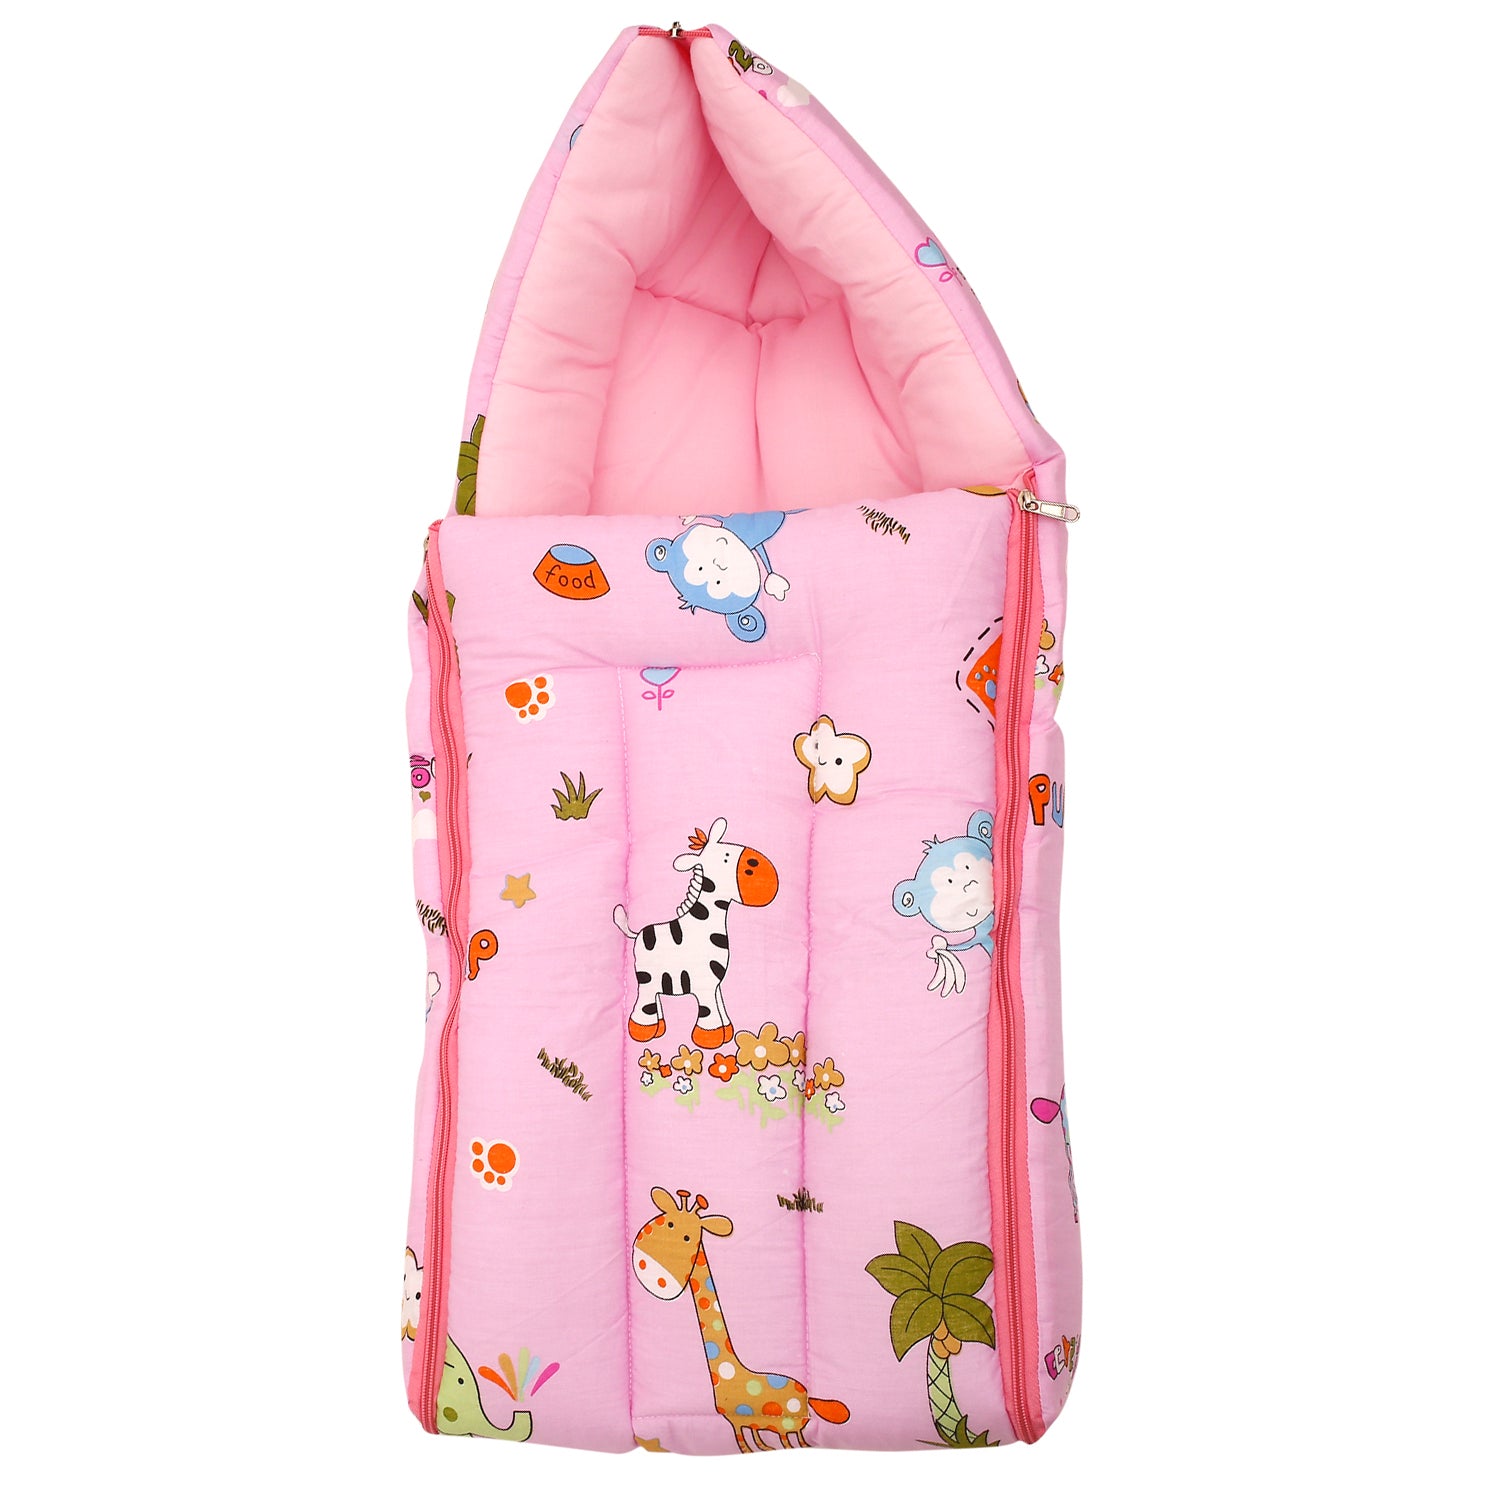 Sleeping Bag Savanna Ooh Na Na Pink - Baby Moo